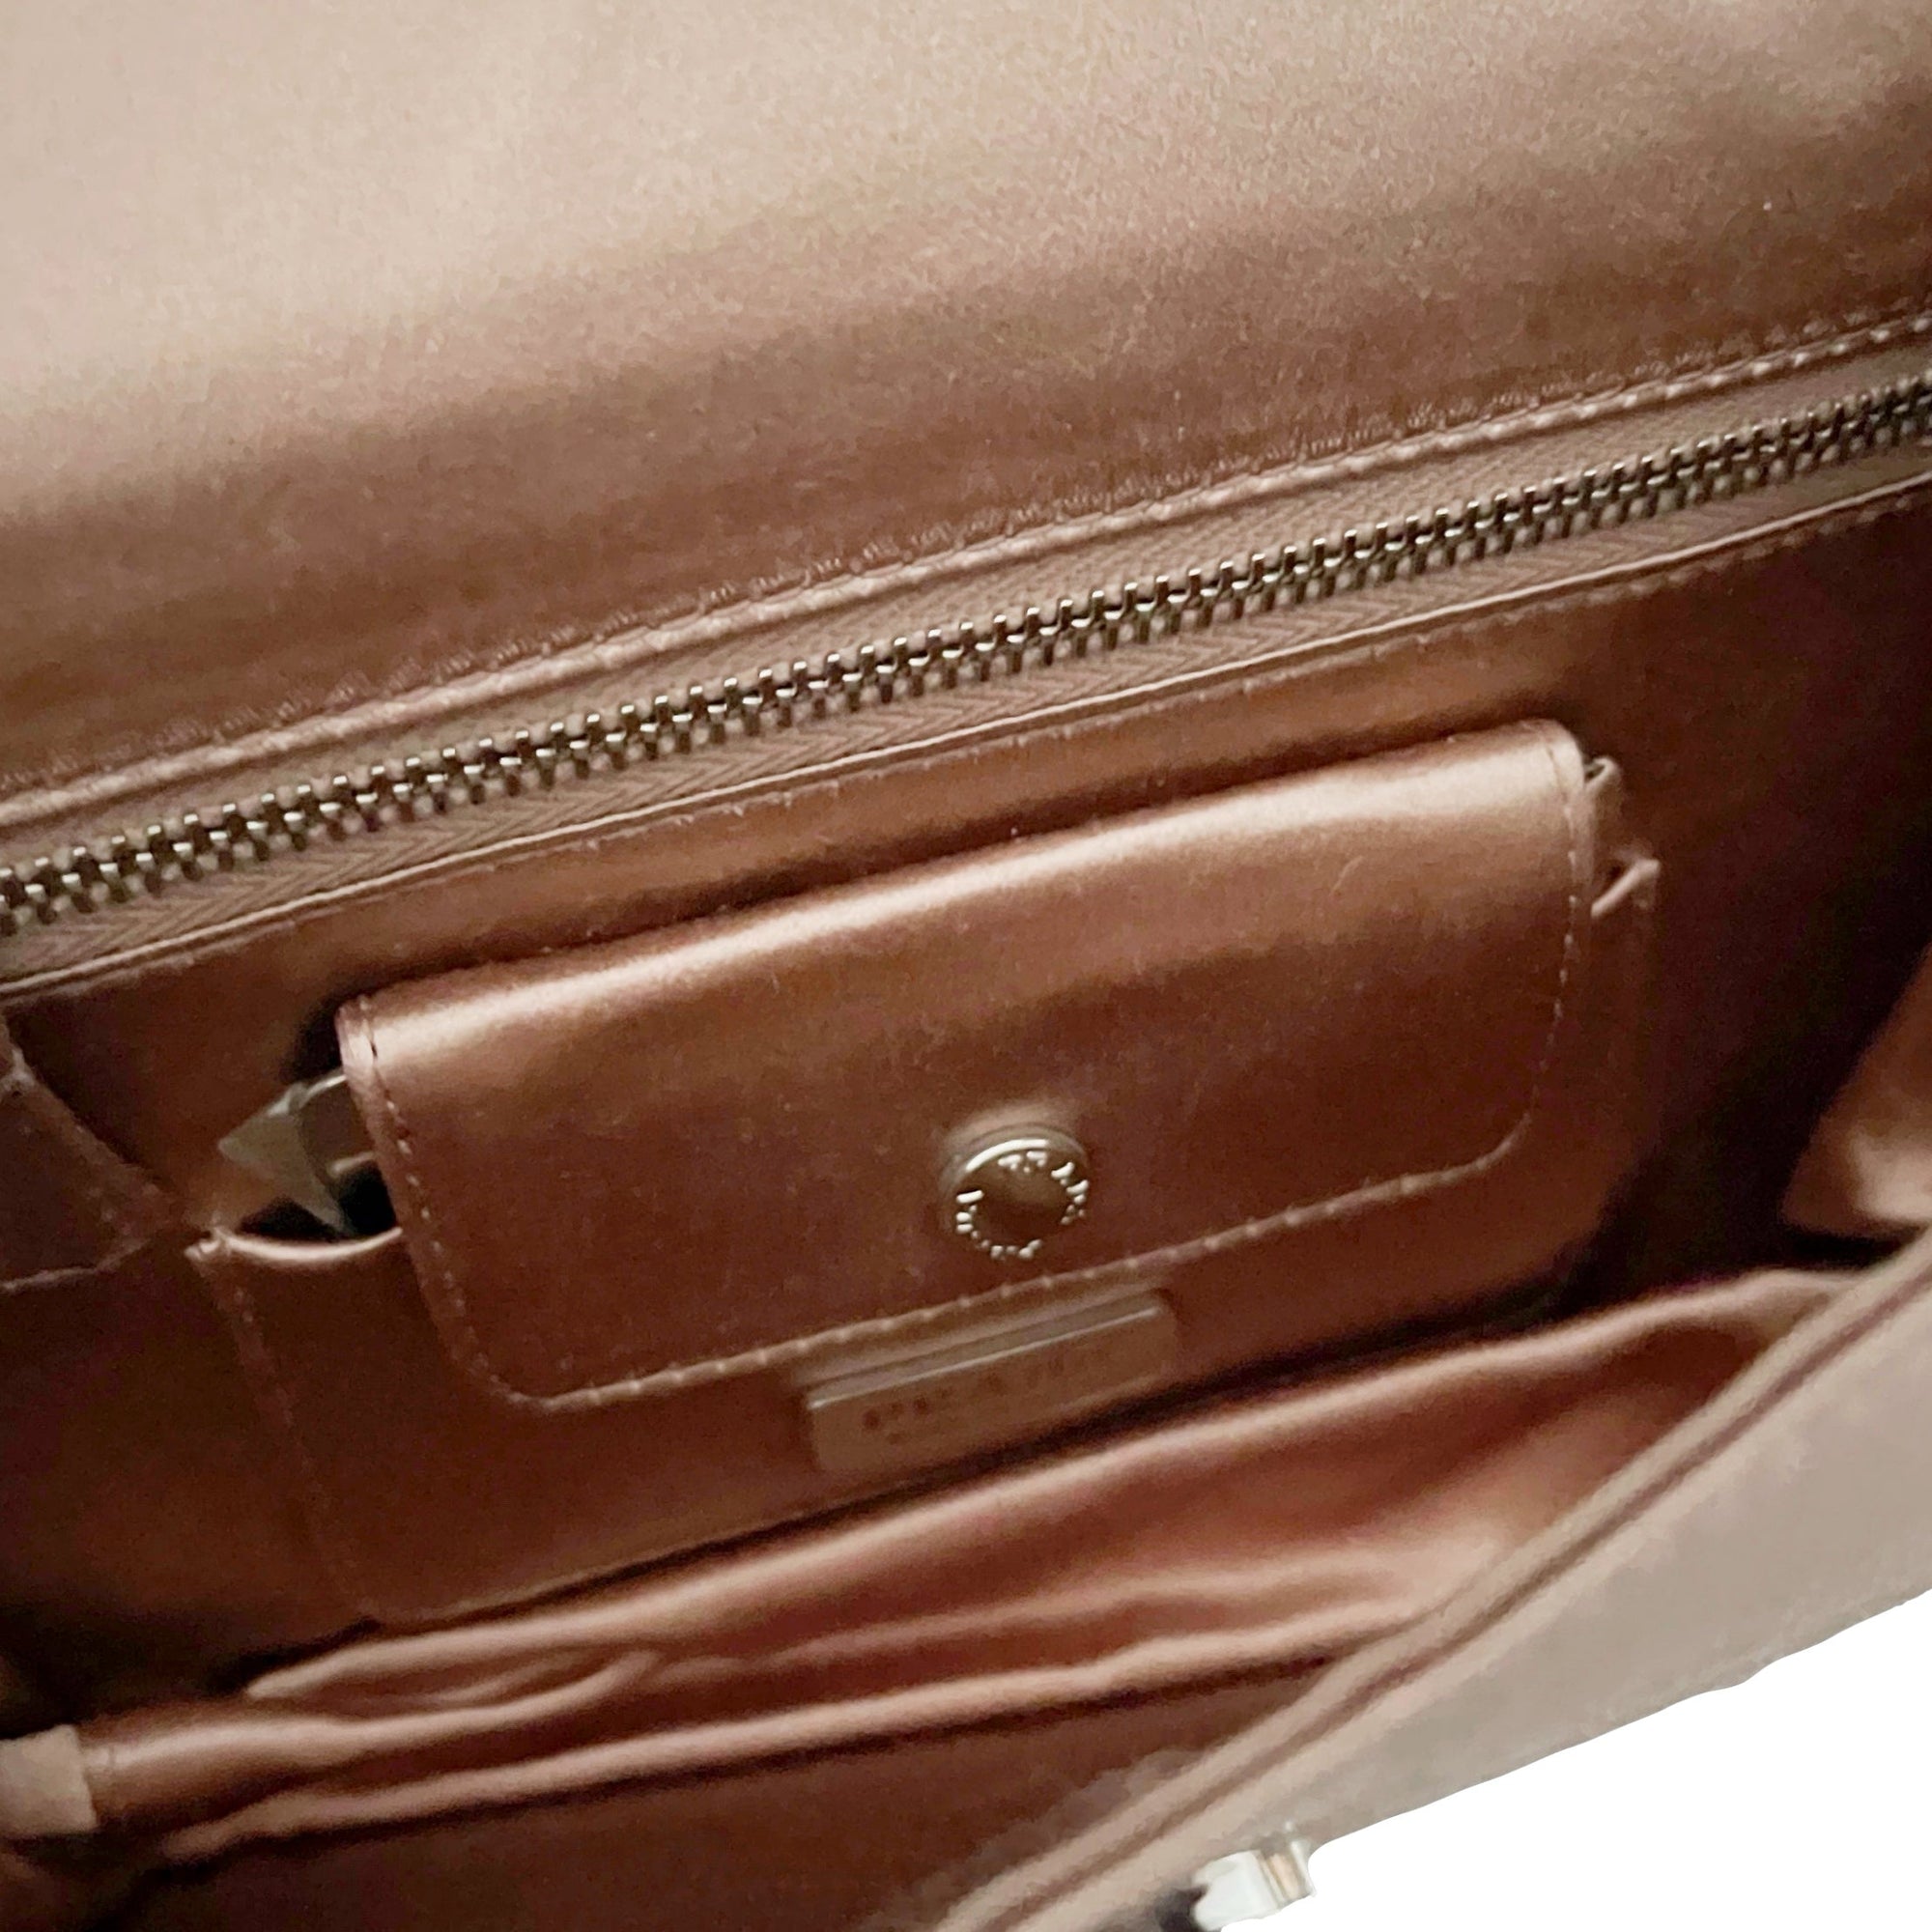 Prada Rose Satin Mini Top Handle Bag - Handbags